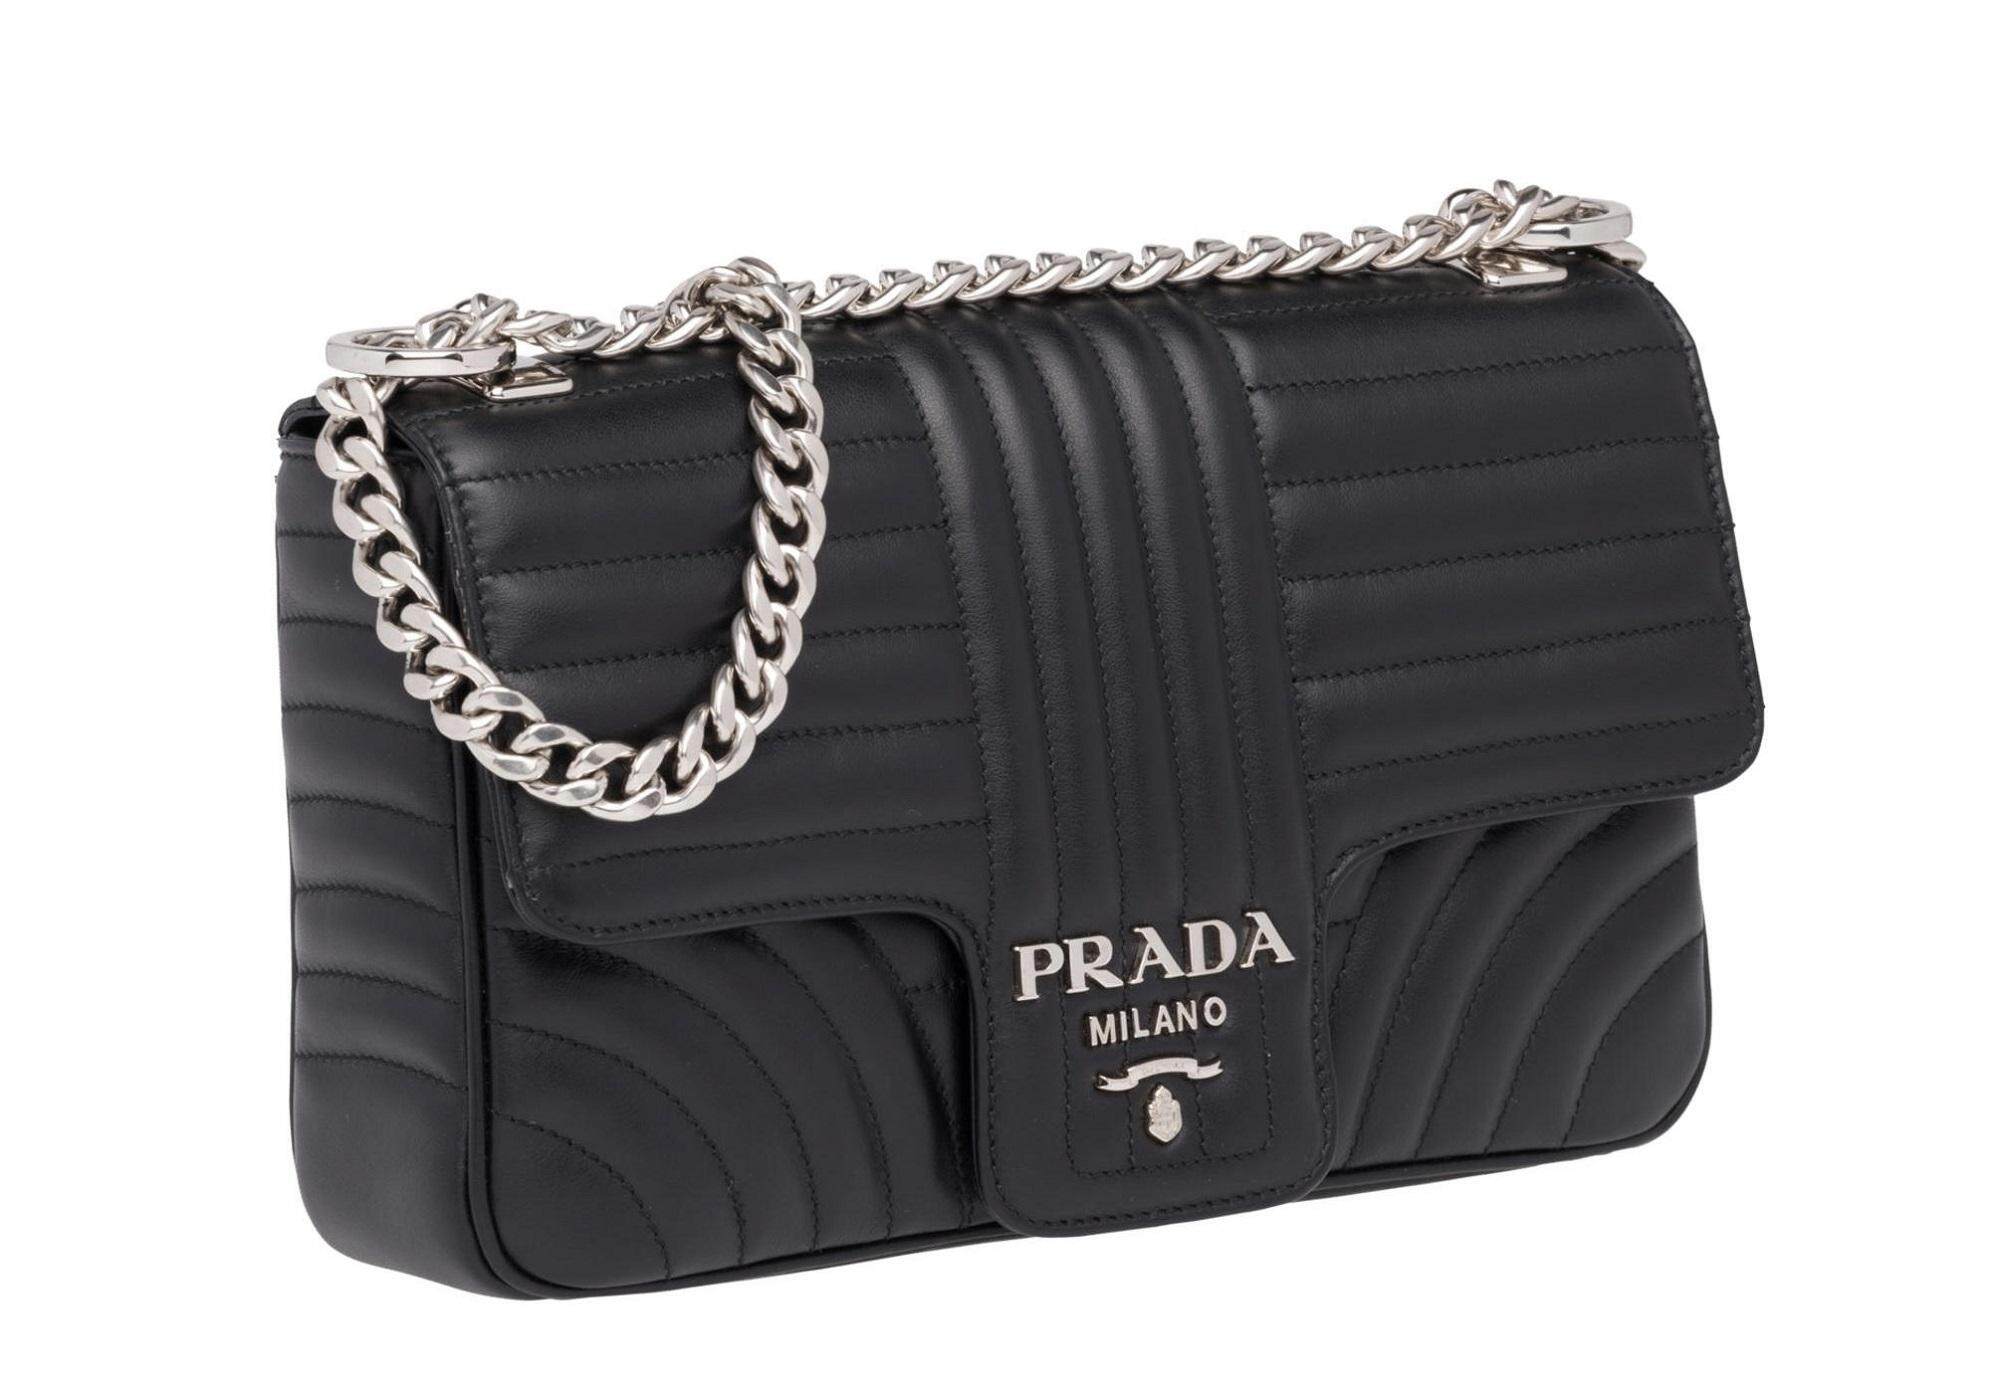 prada handbags price